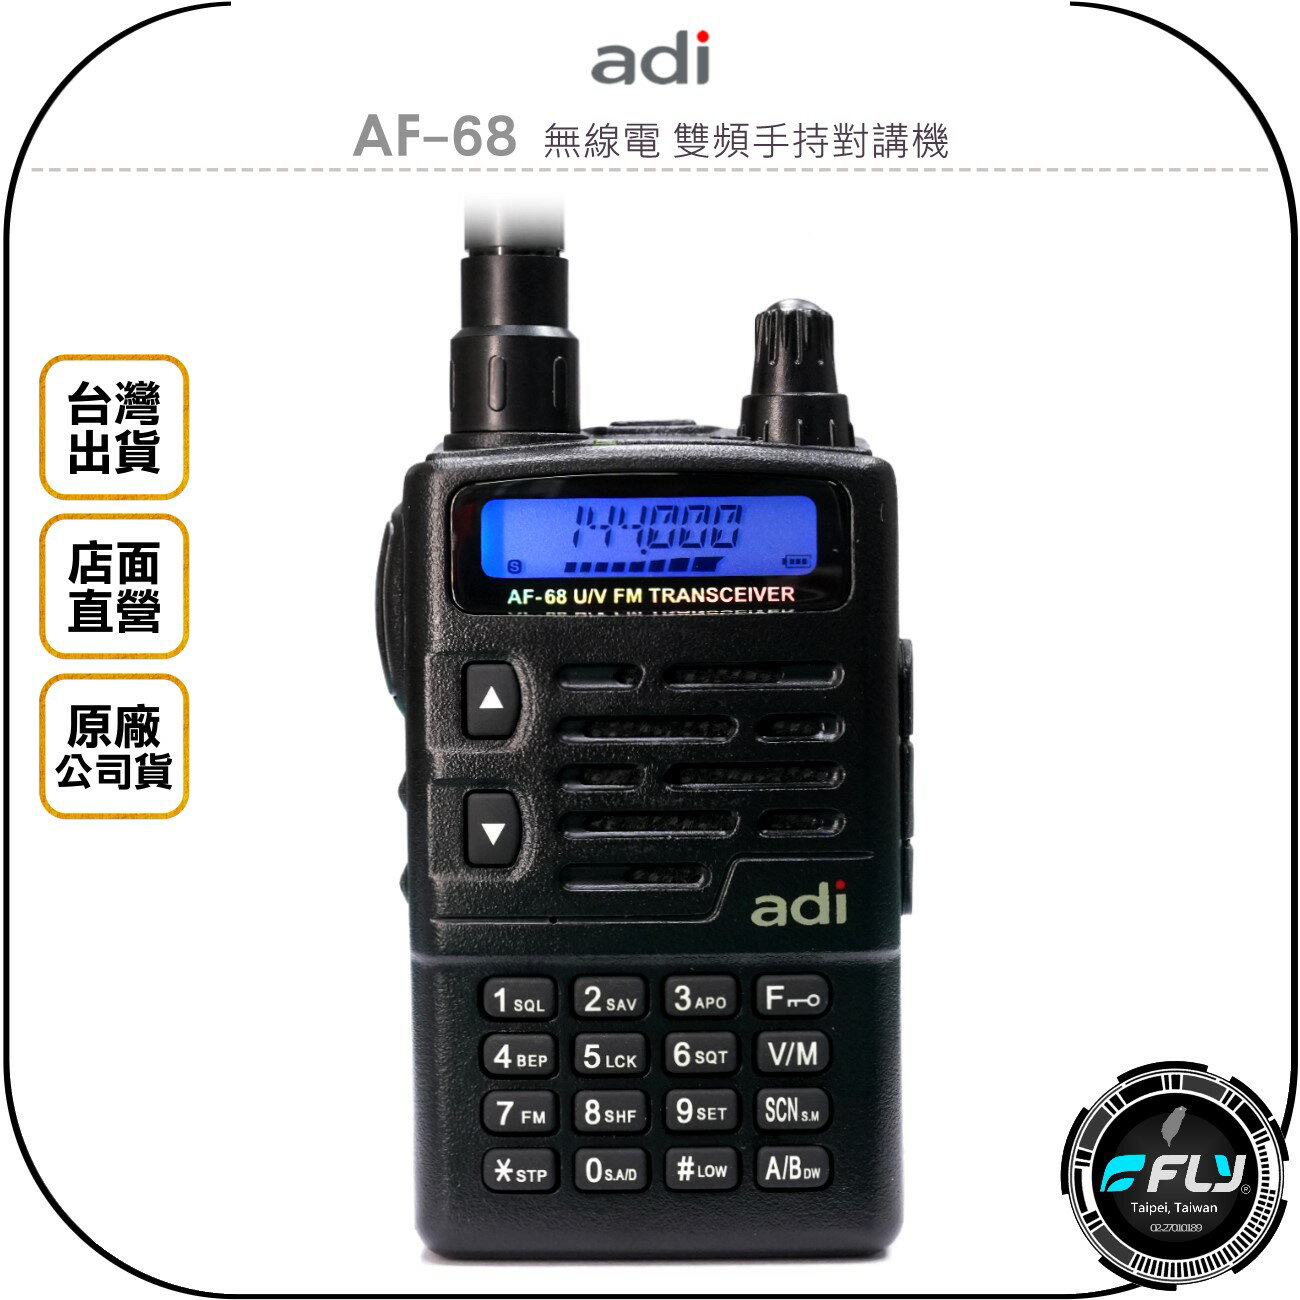 《飛翔無線3C》ADI AF-68 無線電 雙頻手持對講機◉公司貨◉雙頻單顯◉超小體積◉戶外防水◉跟車聯繫◉經典機型